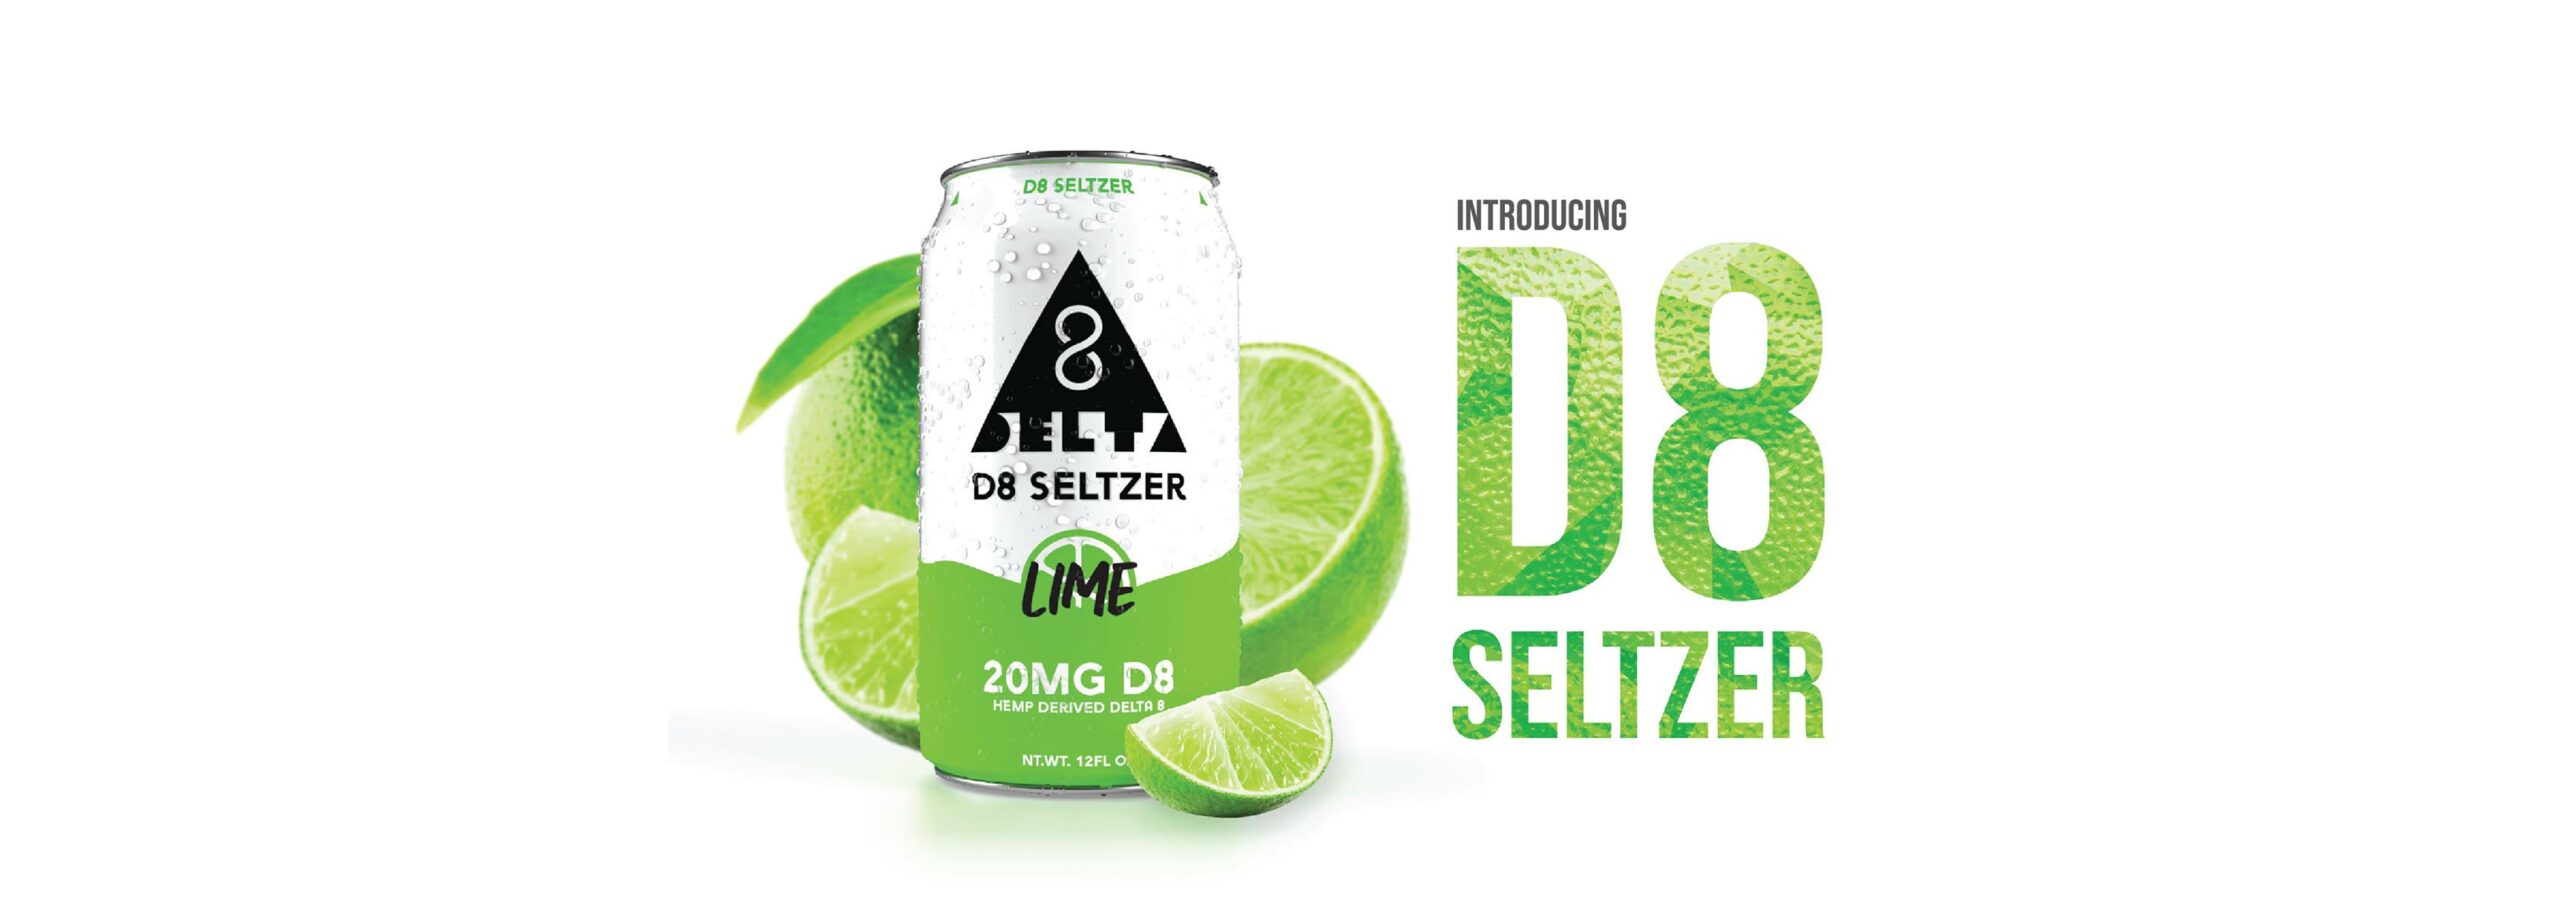 D8 Seltzer drink image